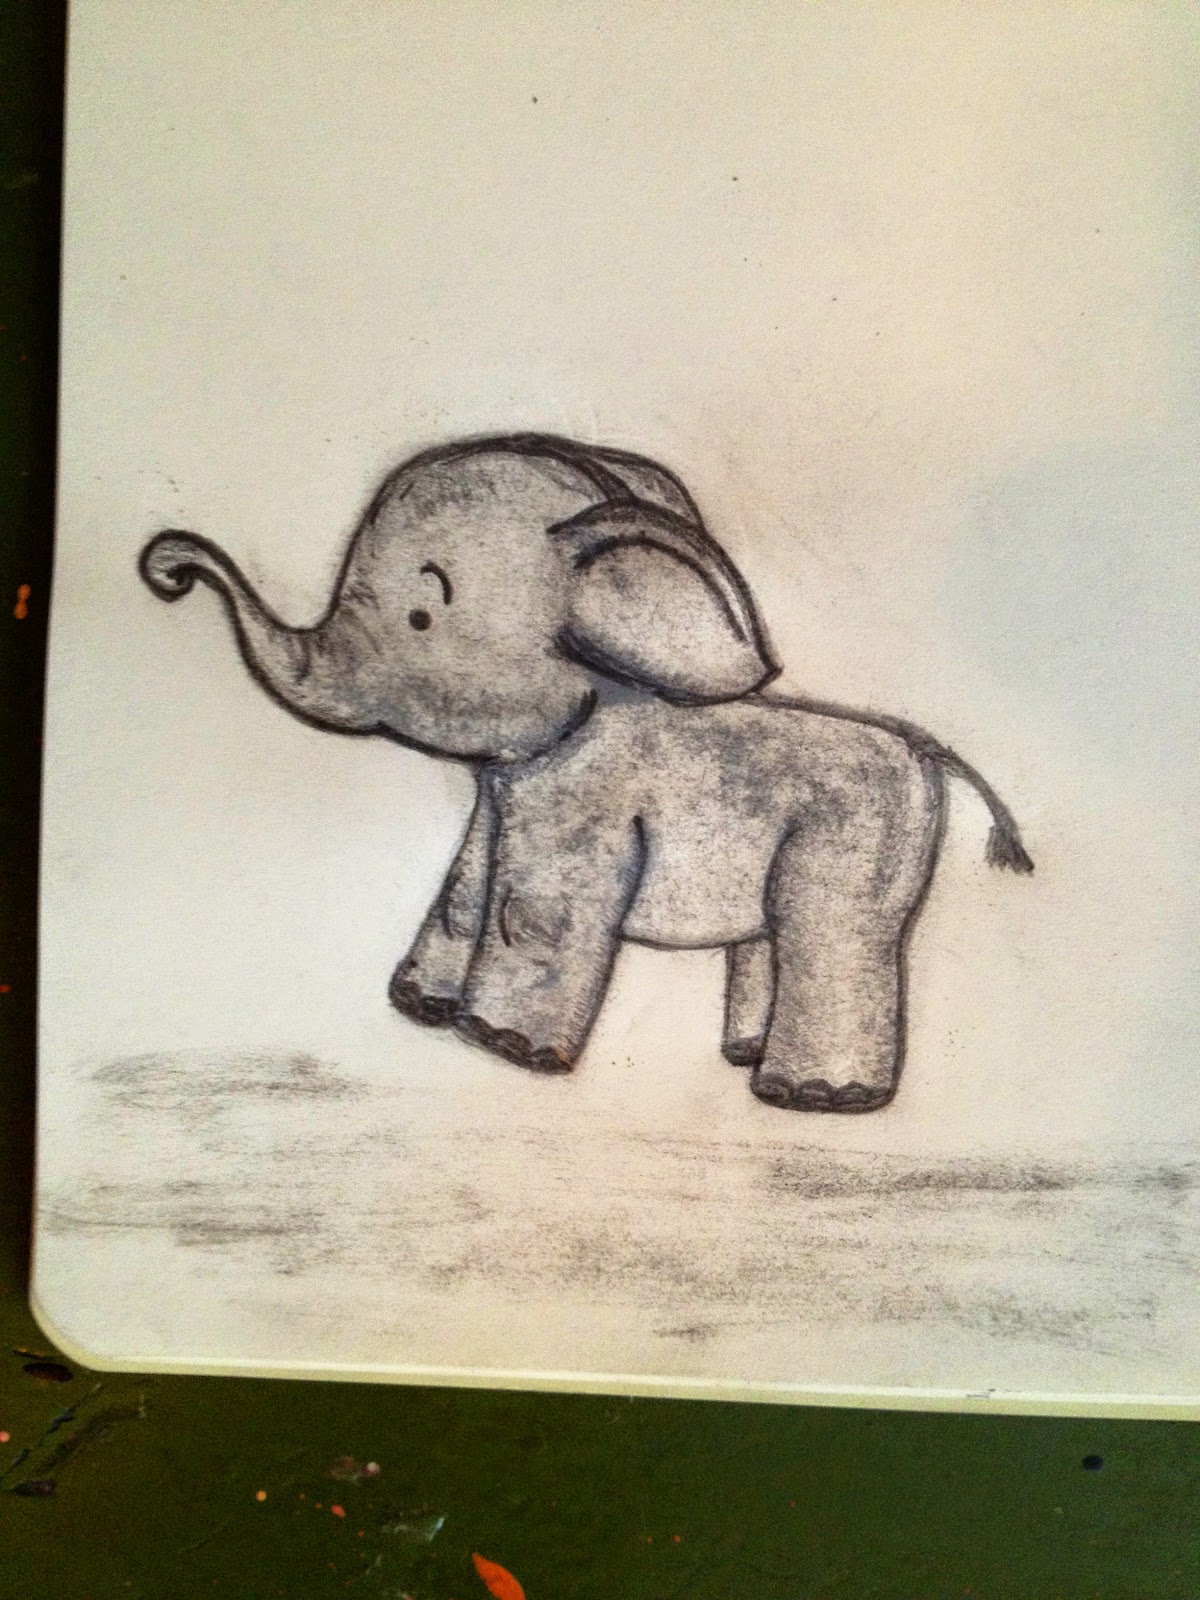 LifeLookLens: Baby Elephant Drawings - Brainstorming A Nursery